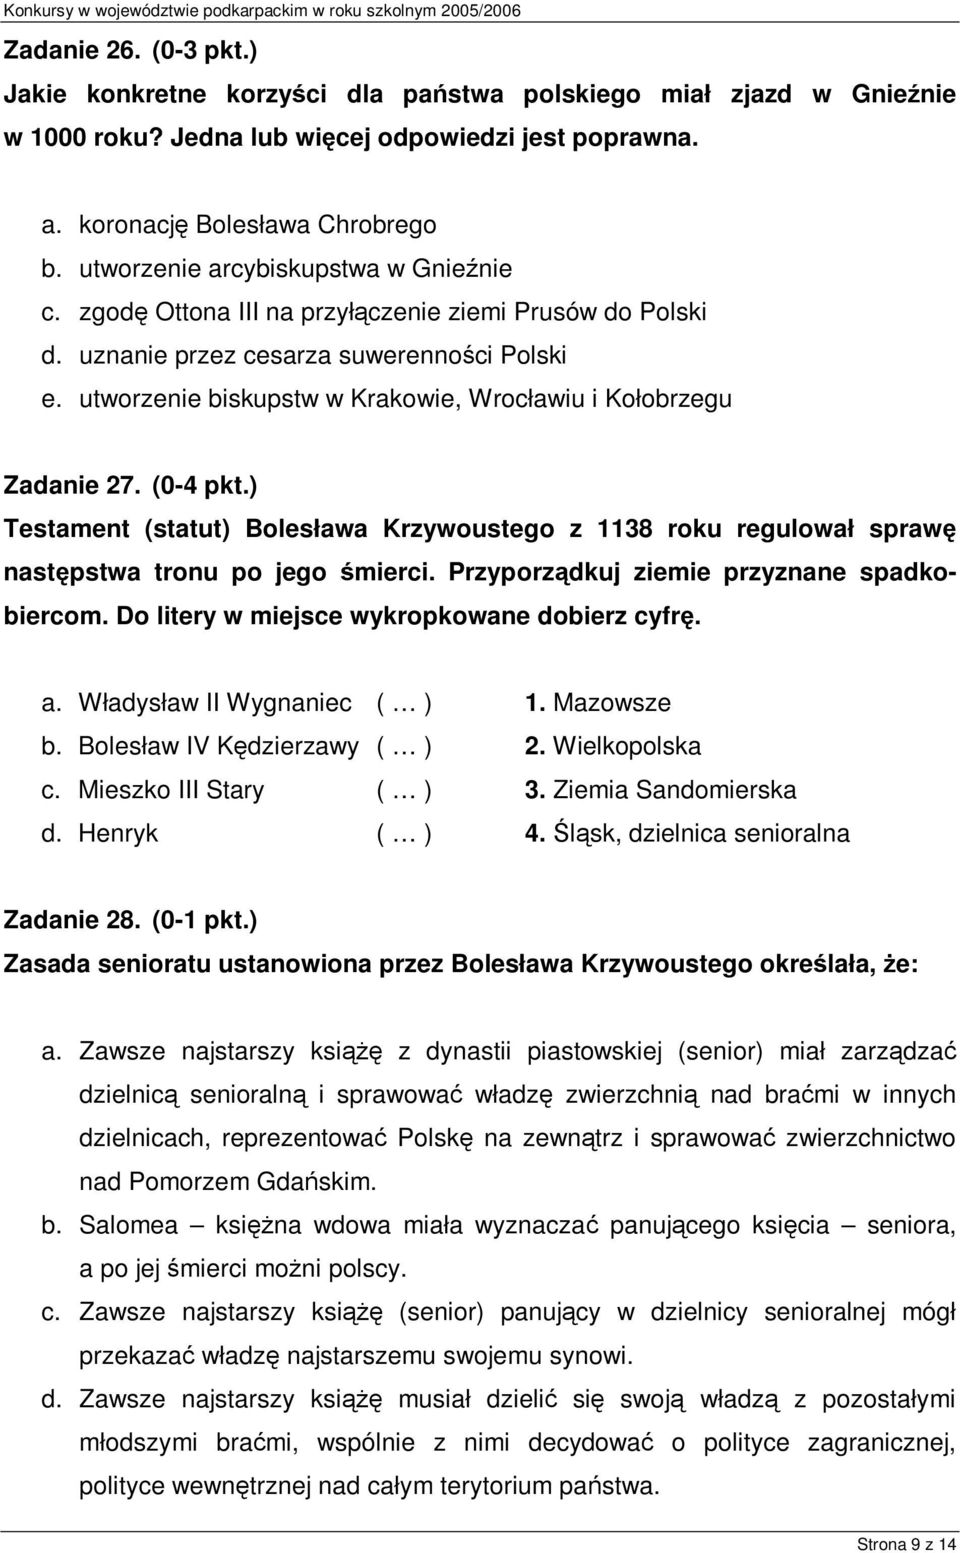 utworzenie biskupstw w Krakowie, Wrocławiu i Kołobrzegu Zadanie 27. (0-4 pkt.) Testament (statut) Bolesława Krzywoustego z 1138 roku regulował sprawę następstwa tronu po jego śmierci.